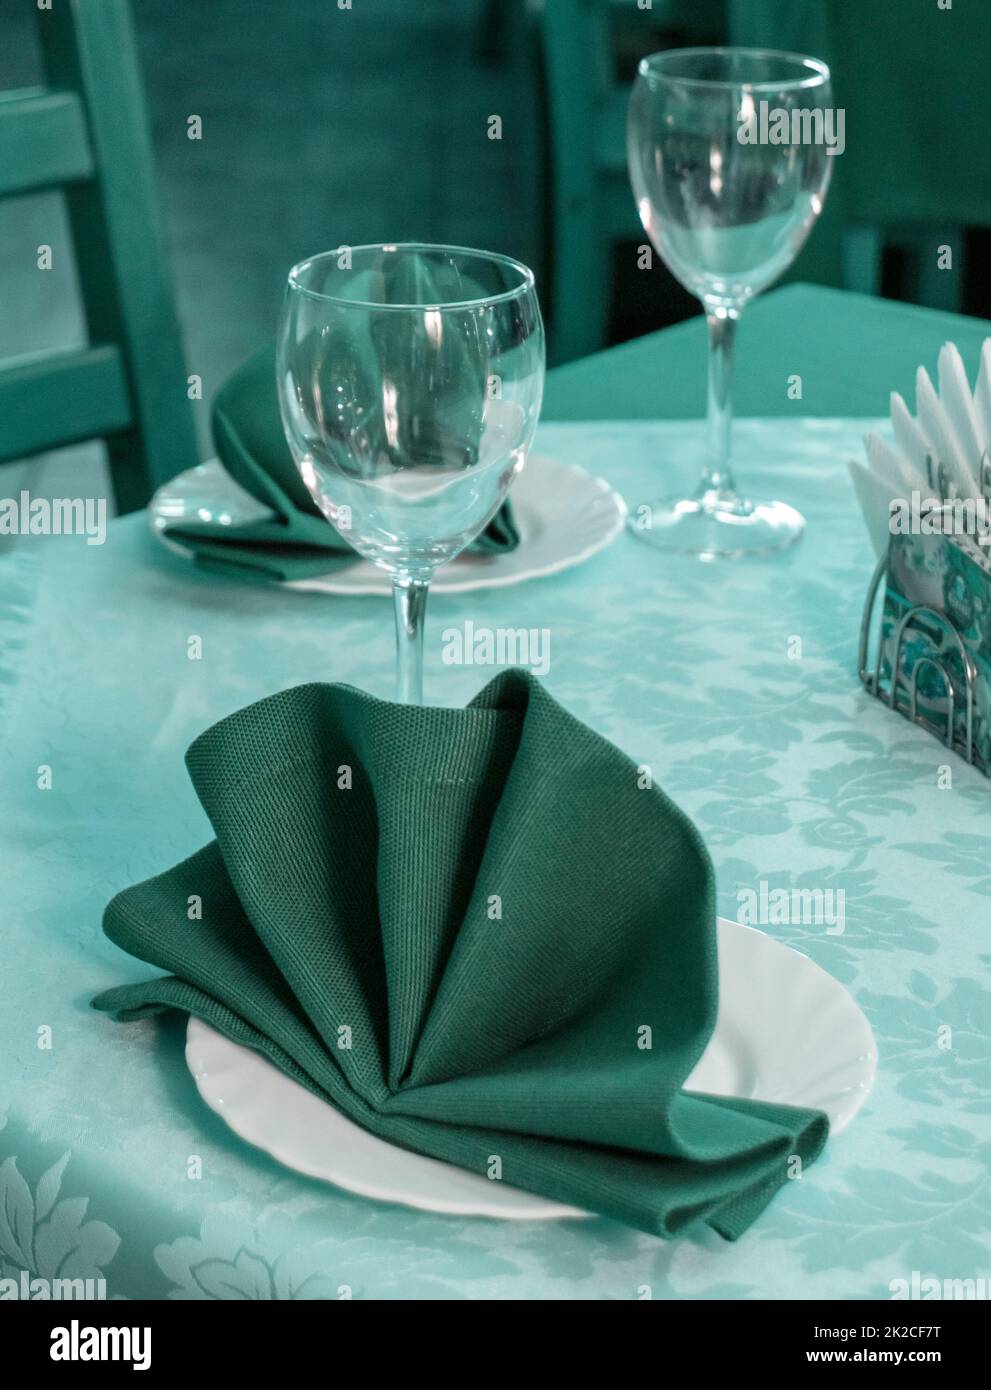 Nahaufnahme eines romantischen Servierens in einem Restaurant, Tisch mit Servietten und Gerichten, abends grün-blau getönt, vertikal Stockfoto